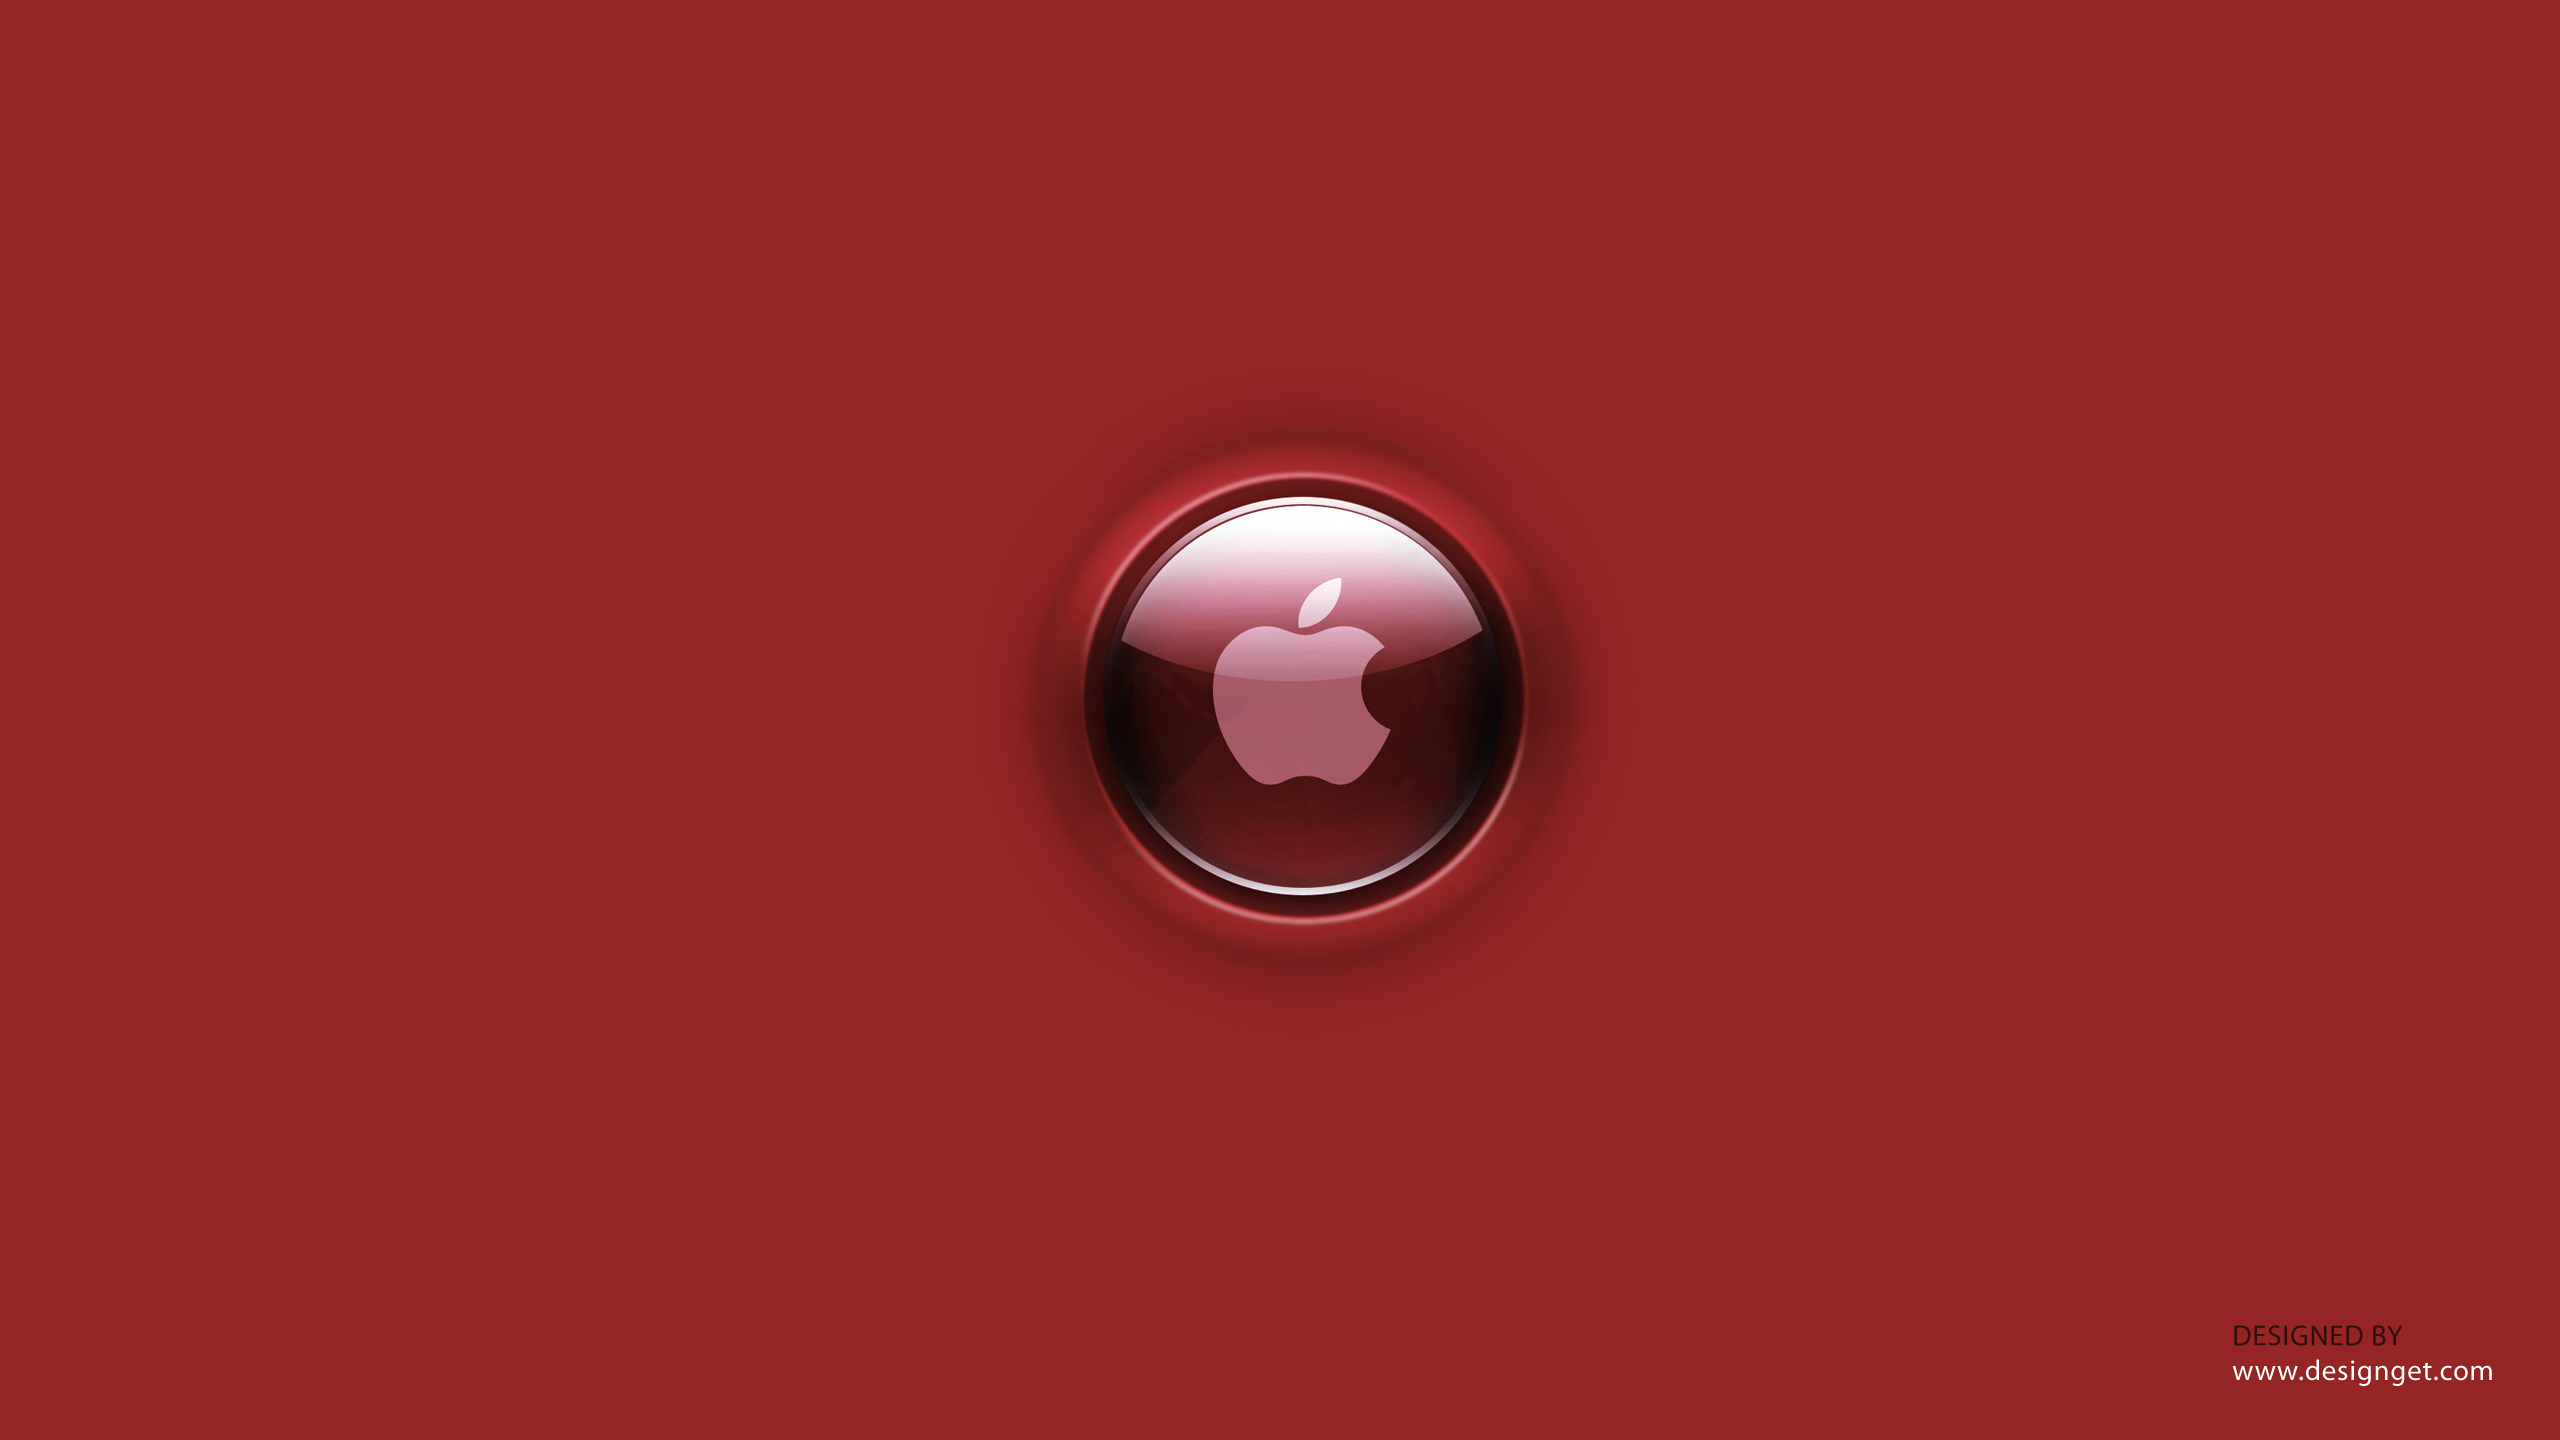 Exclusive Red Apple Wallpaper Designget